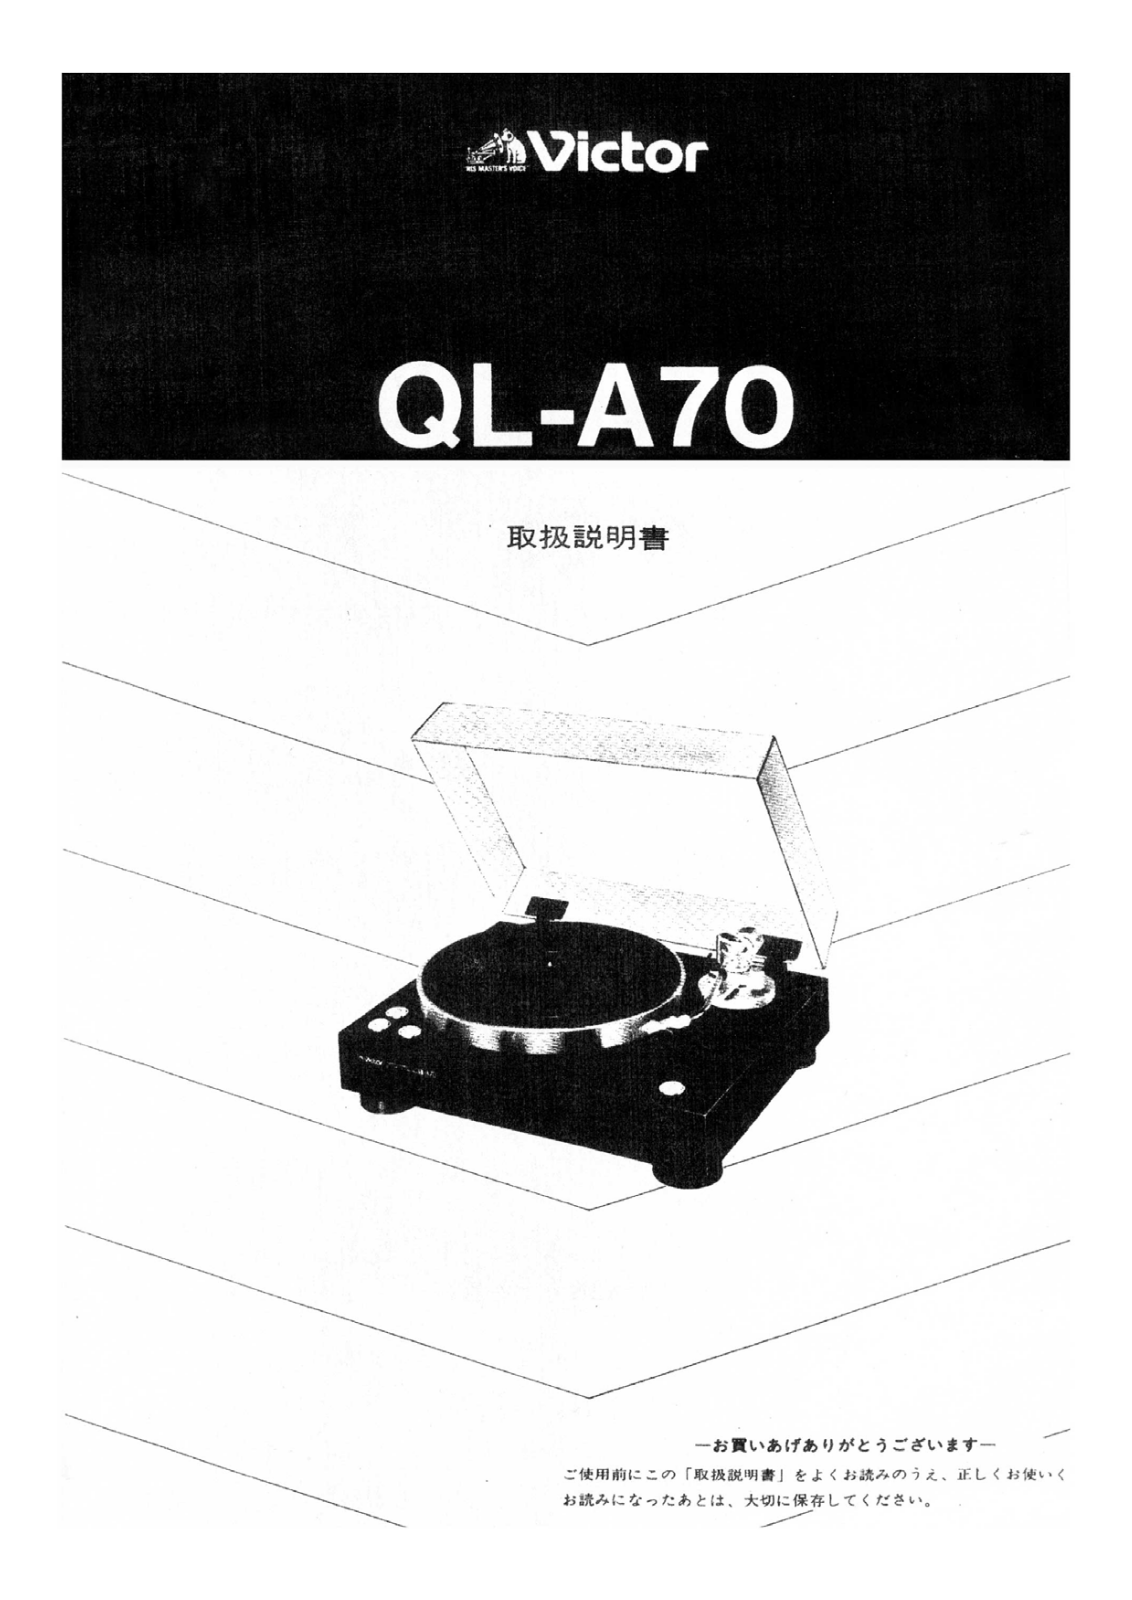 Jvc QL-A70 Owners Manual